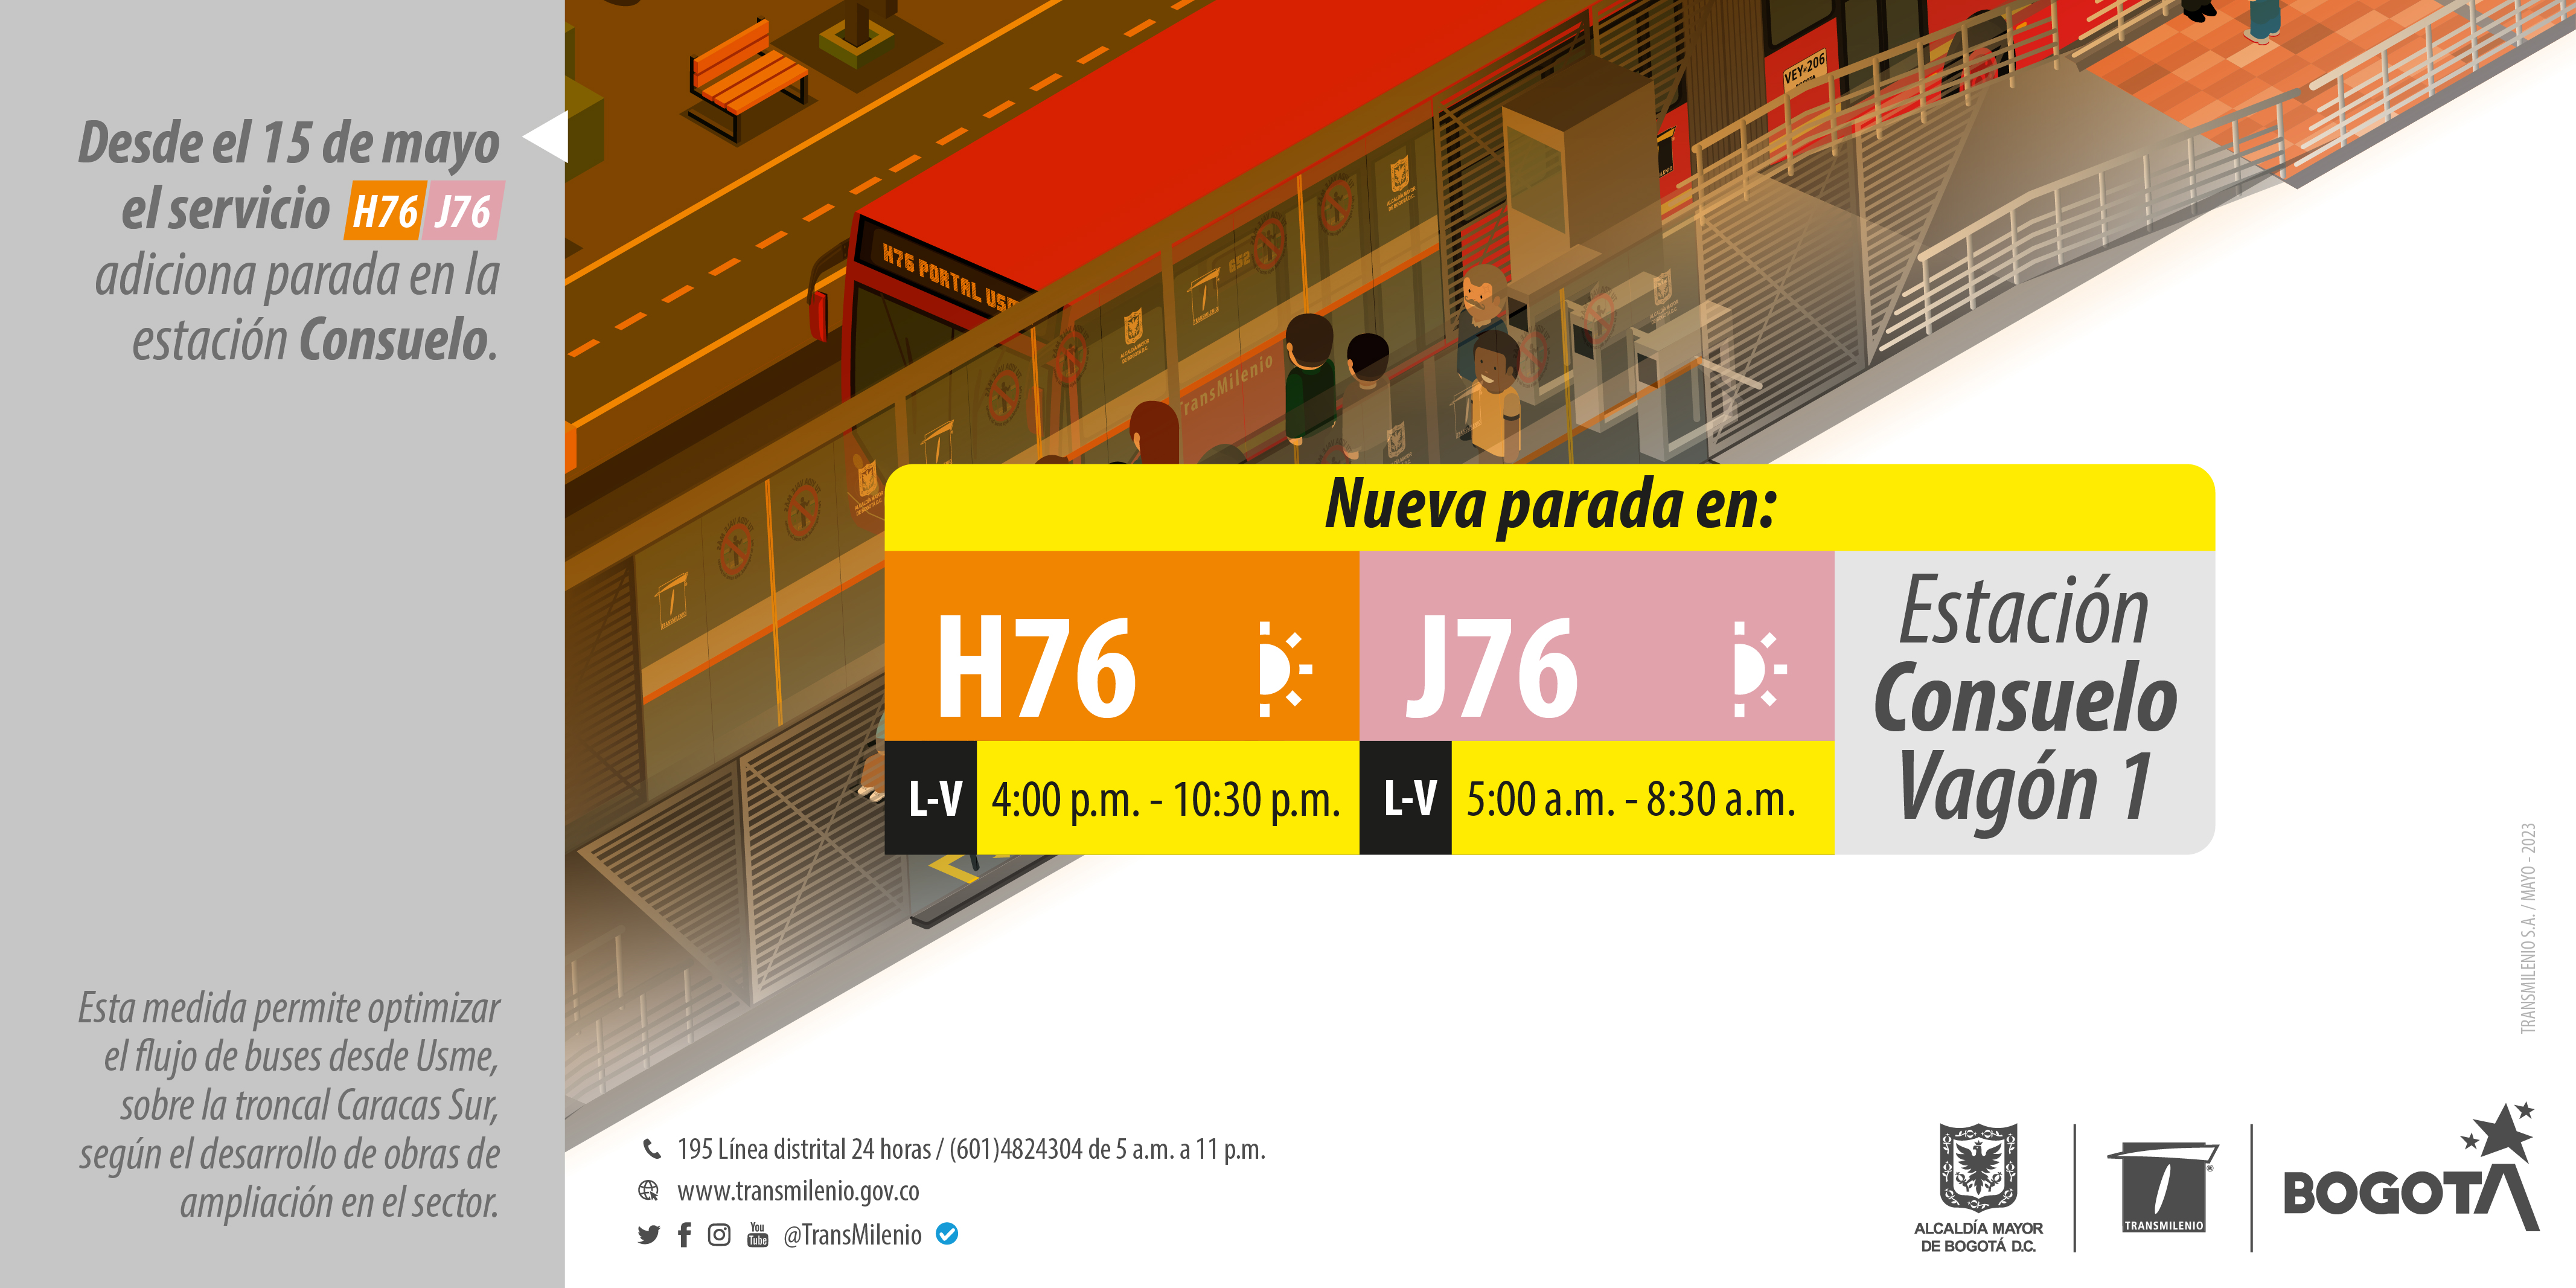 Nuevas paradas en la estación consuelo -Vagón 1 rutas H76 - J76